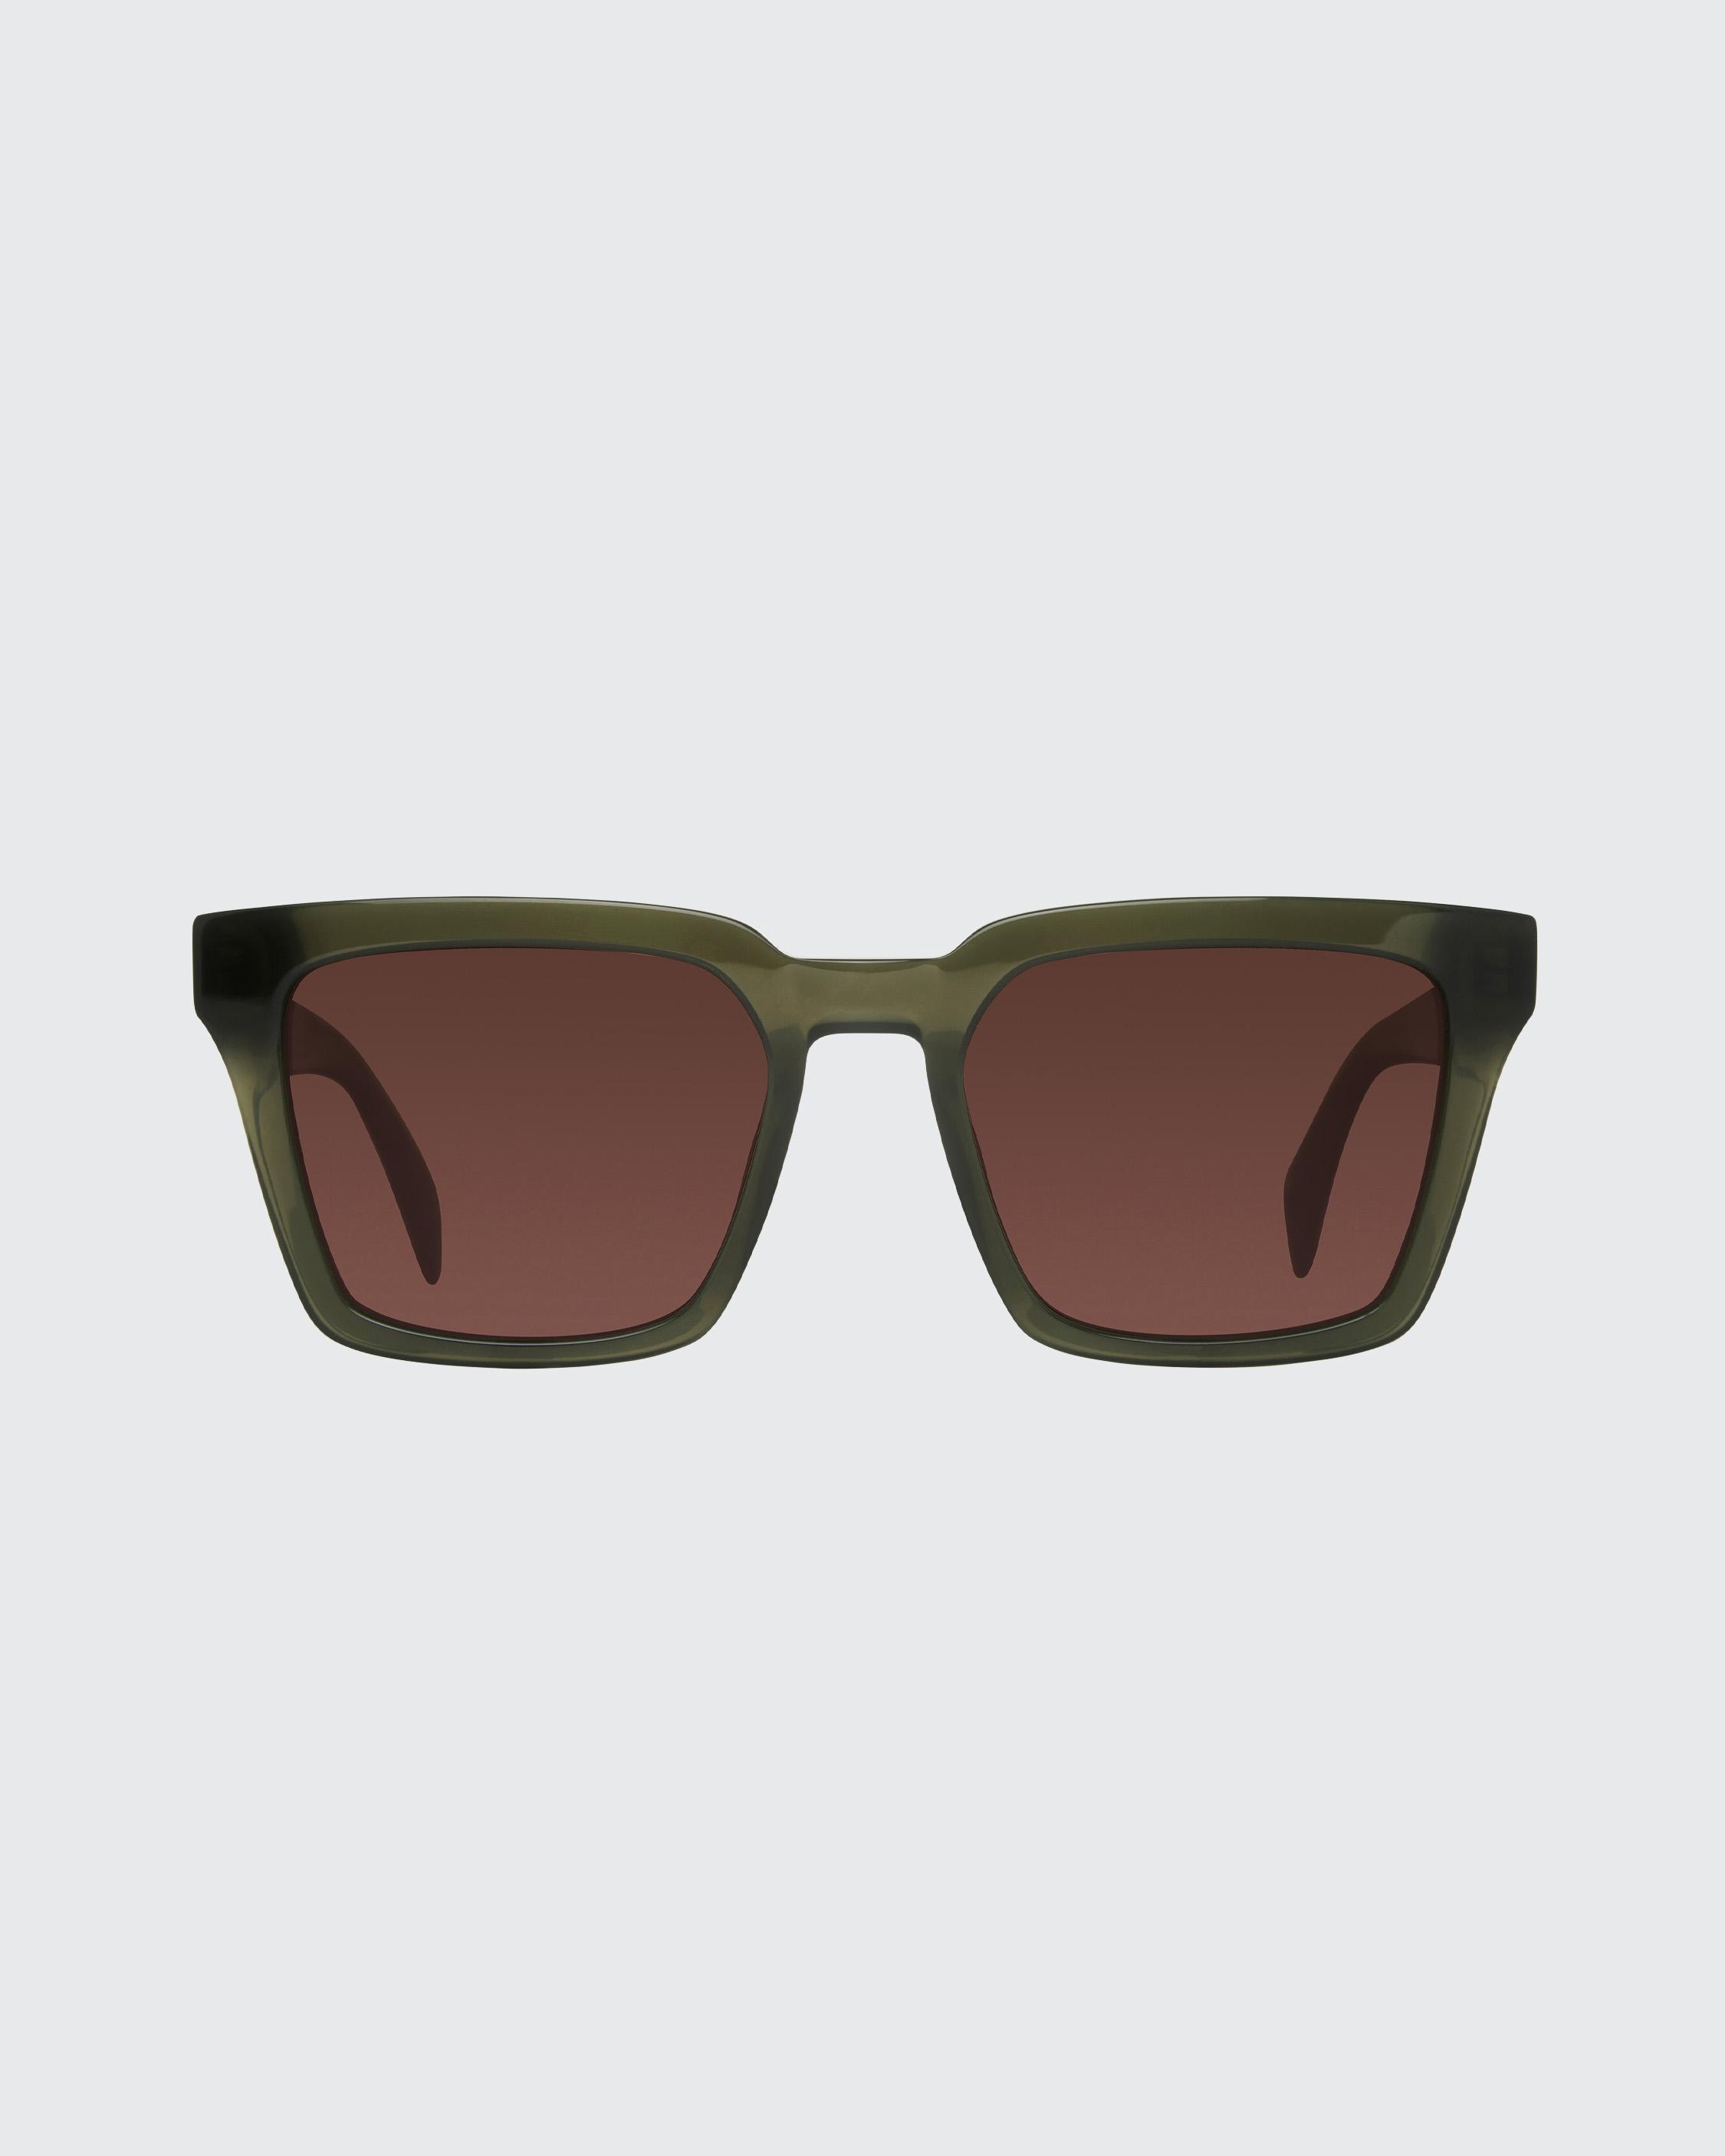 Zander
Square Sunglasses - 2